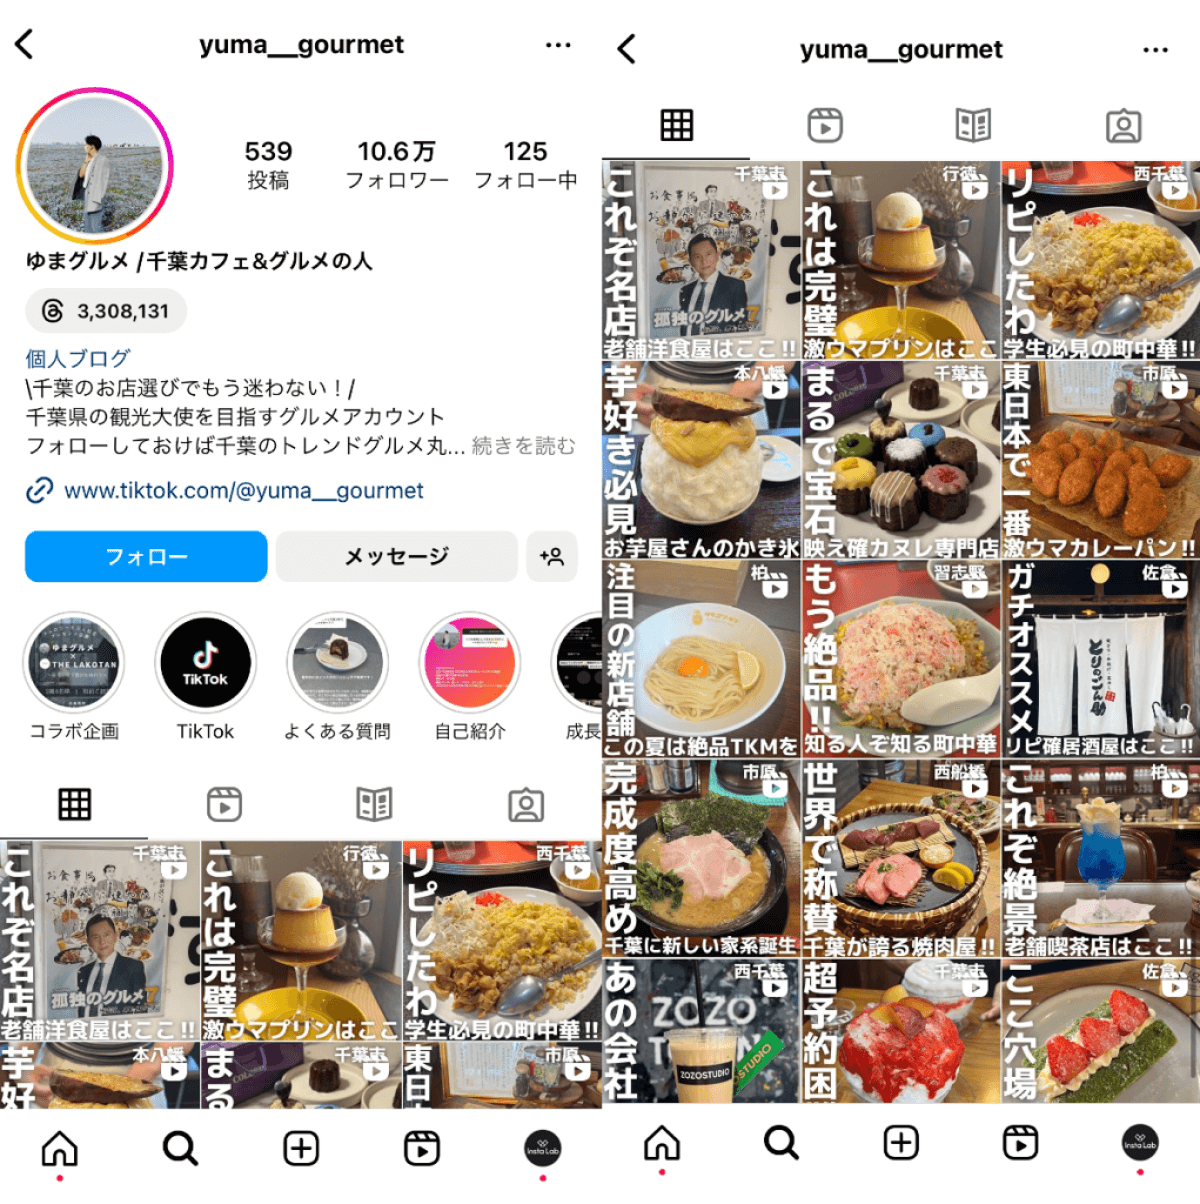 instagram-account-yuma-gourmet